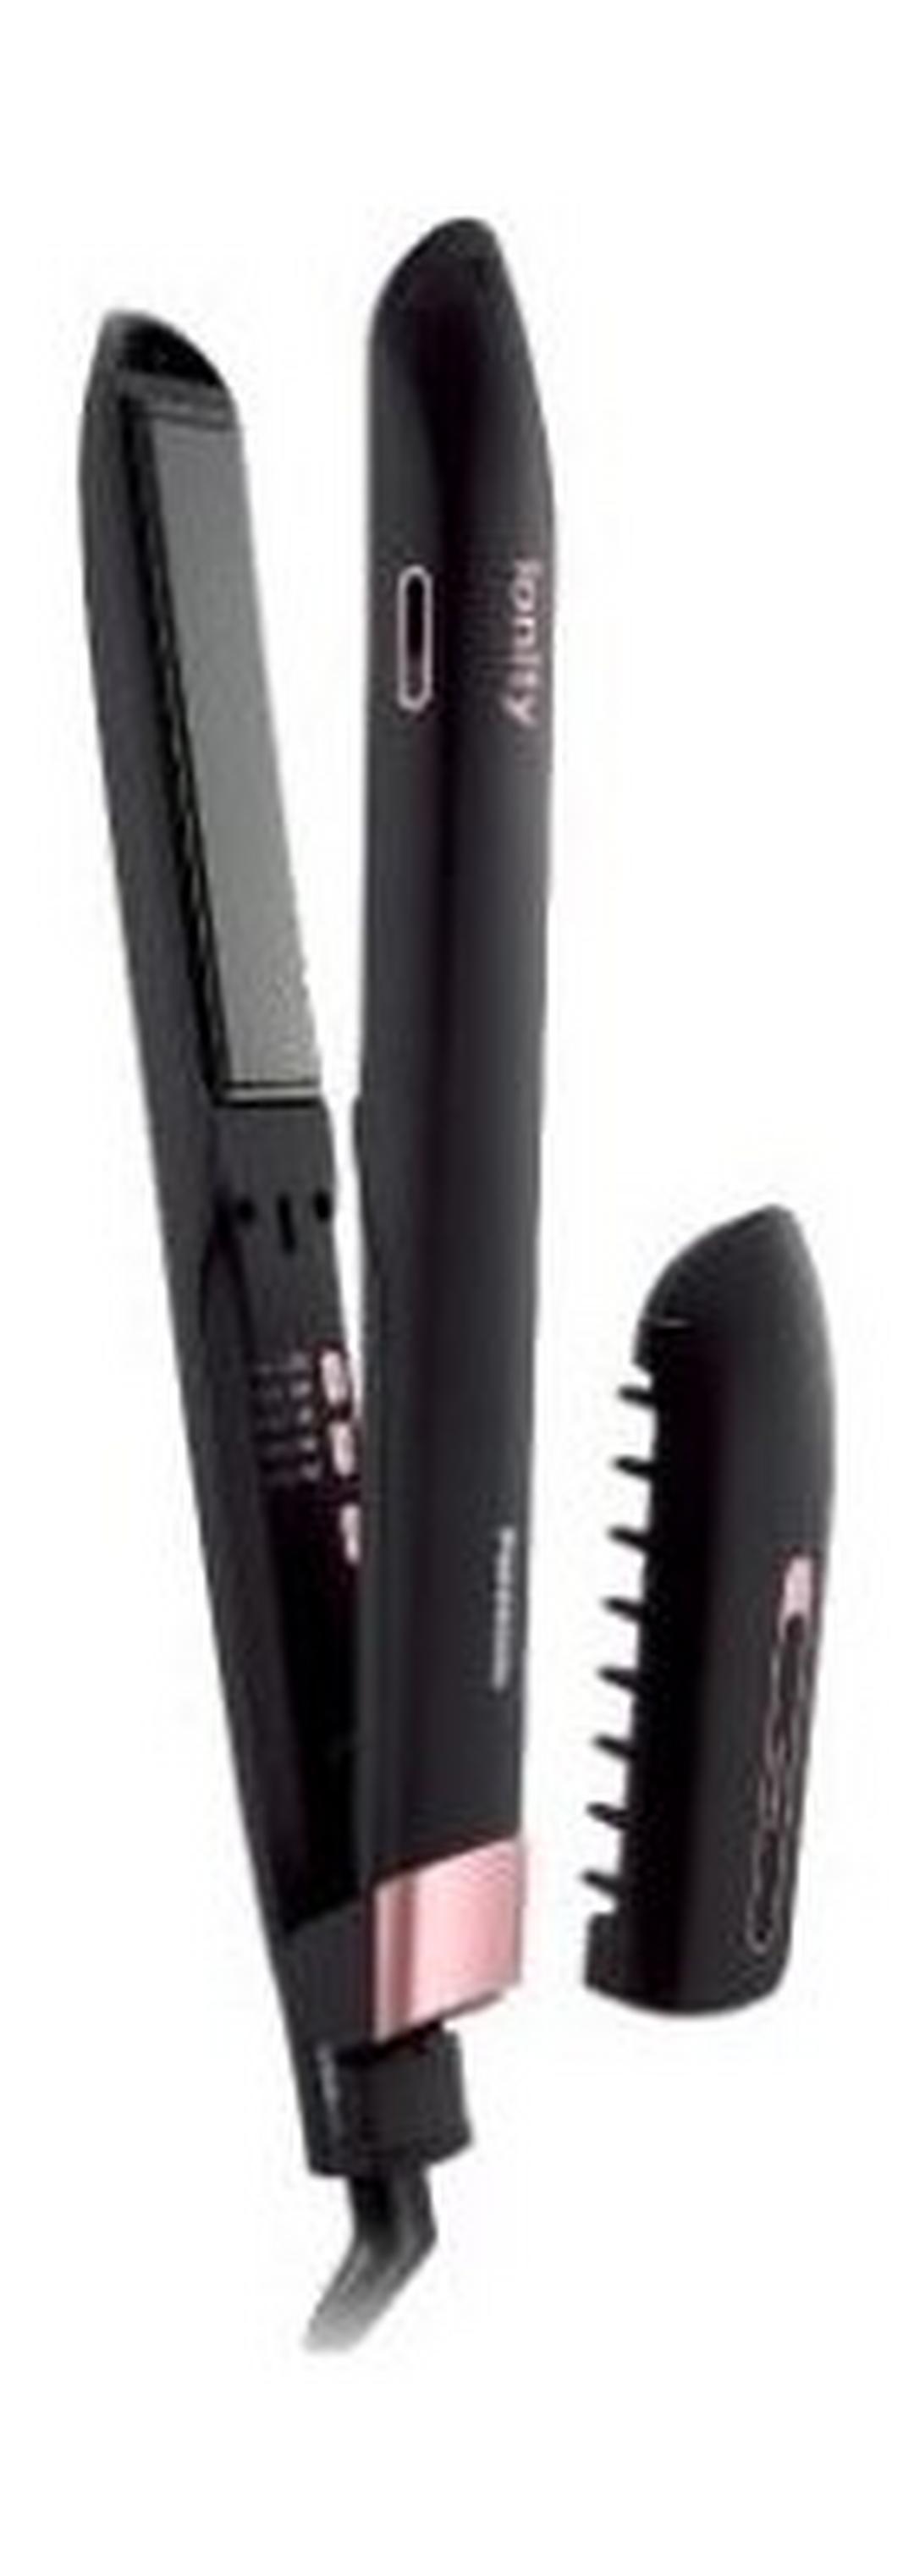 جهاز تصفيف وفرد الشعر الثلاثي اللطيف من باناسونيك - EH HV70-K695